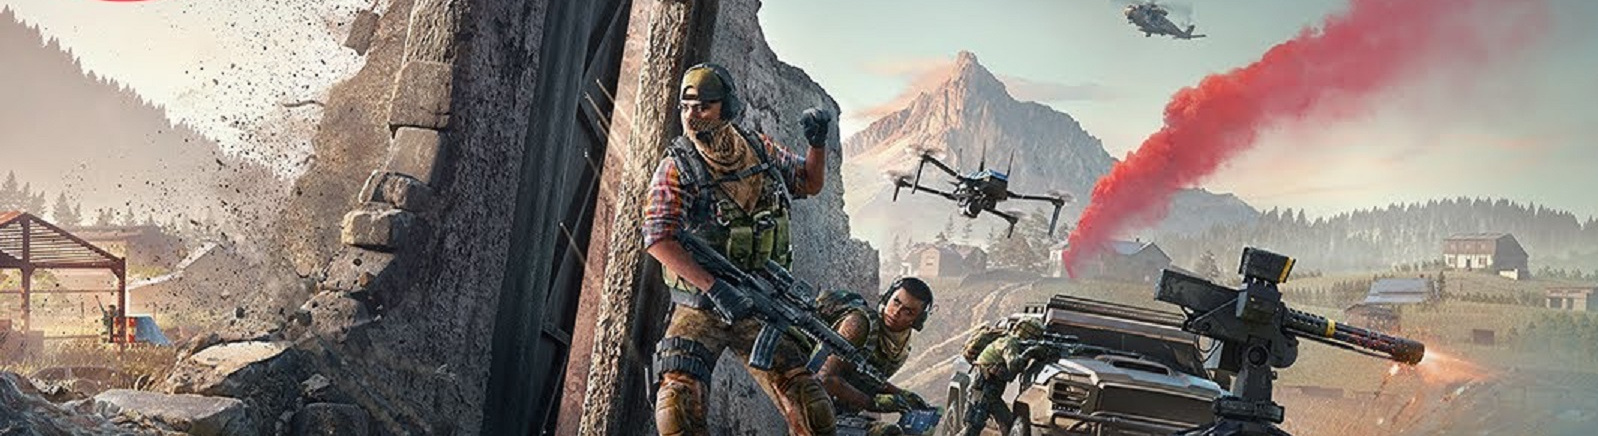 Дата выхода Tom Clancy's Ghost Recon: Frontline  на PC, PS5 и Xbox Series X/S в России и во всем мире